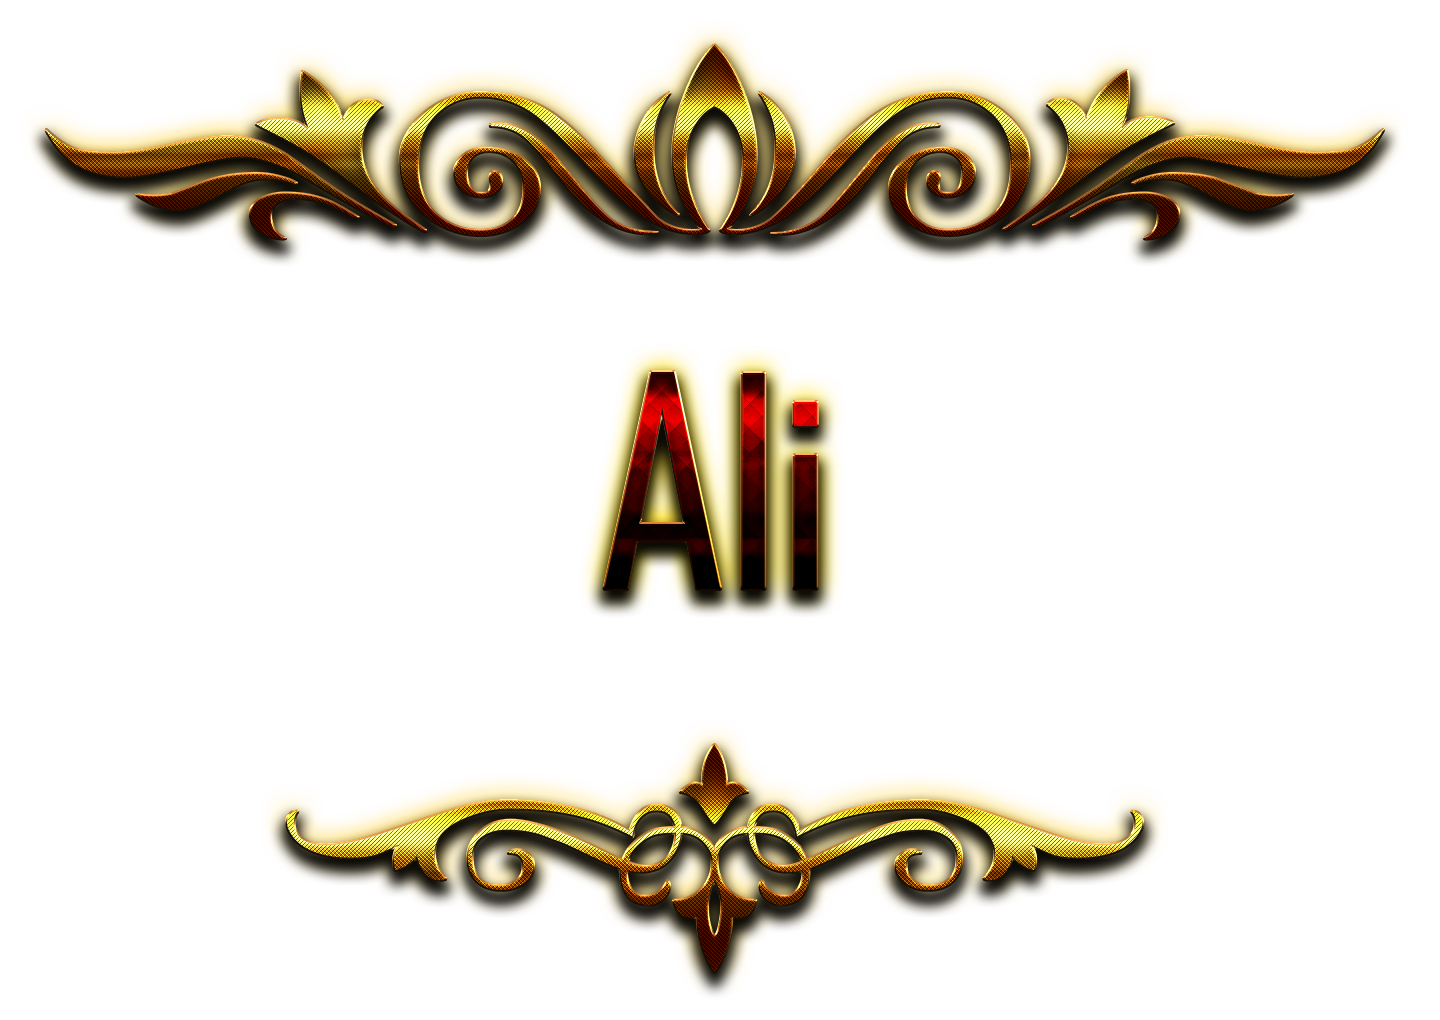 تصویر دوربری شده Ali انگلیسی به رنگ طلایی با کیفیت 8k